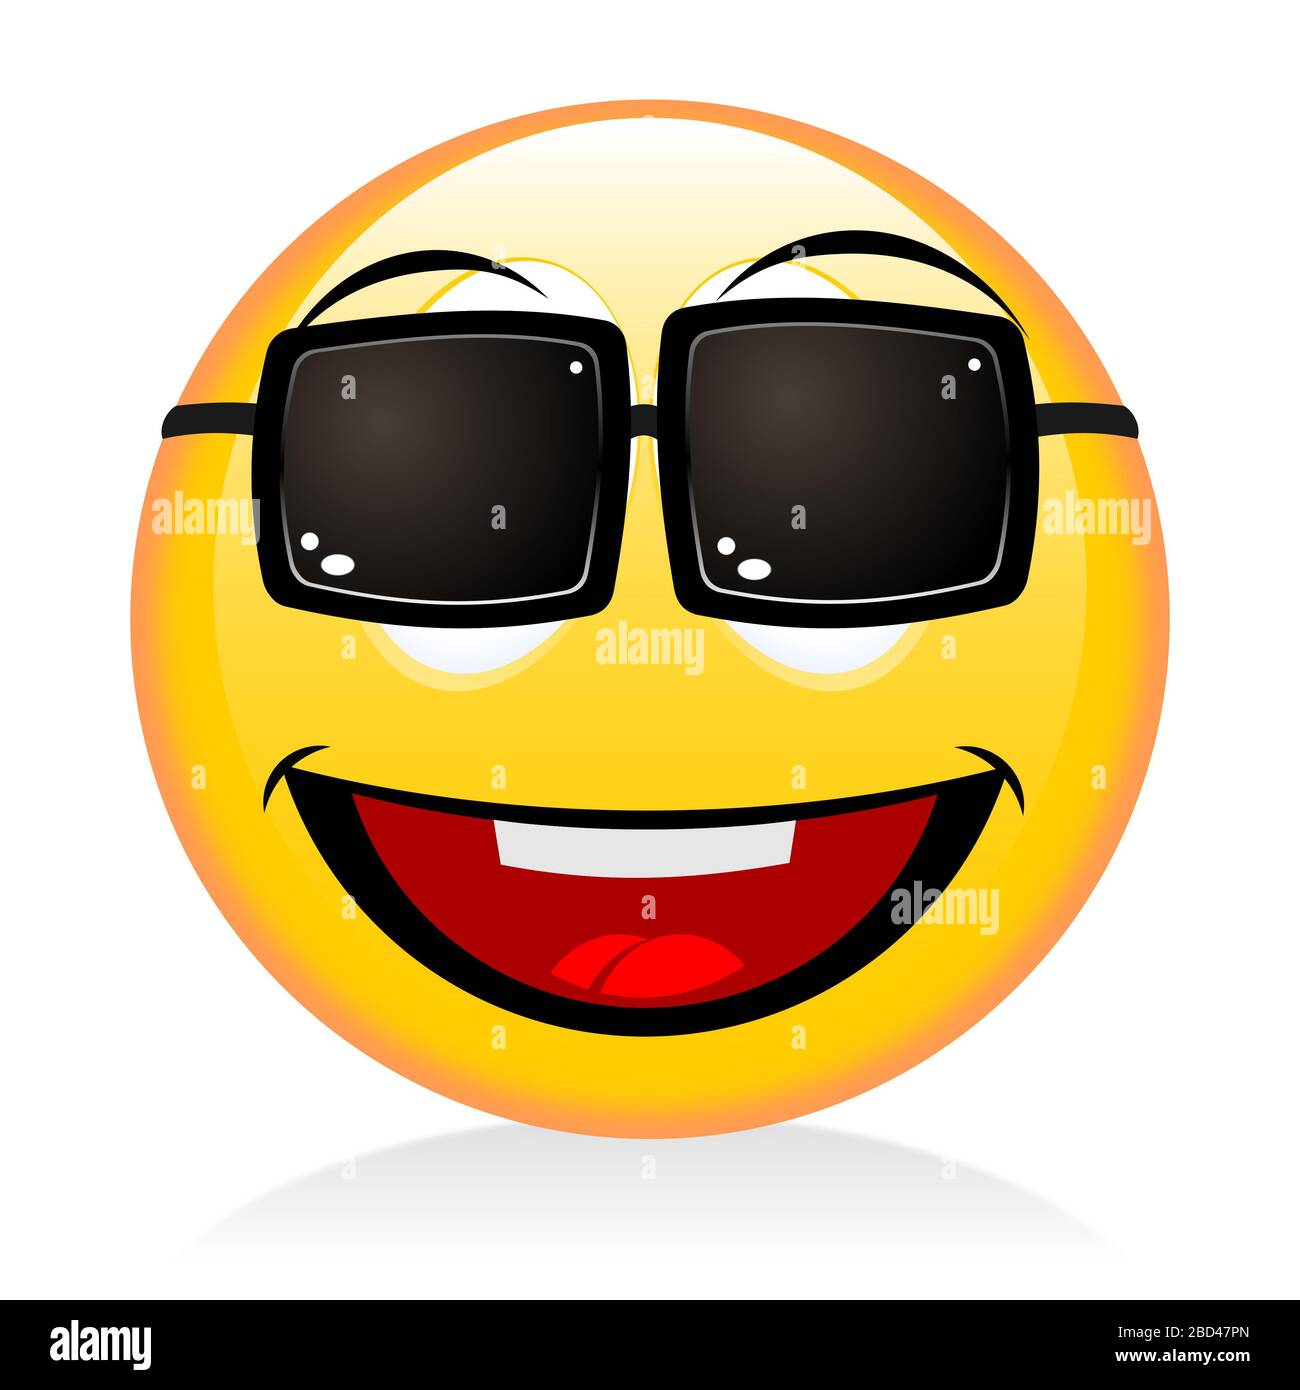 Emoji, emoticon - sunglasses Stock Photo - Alamy